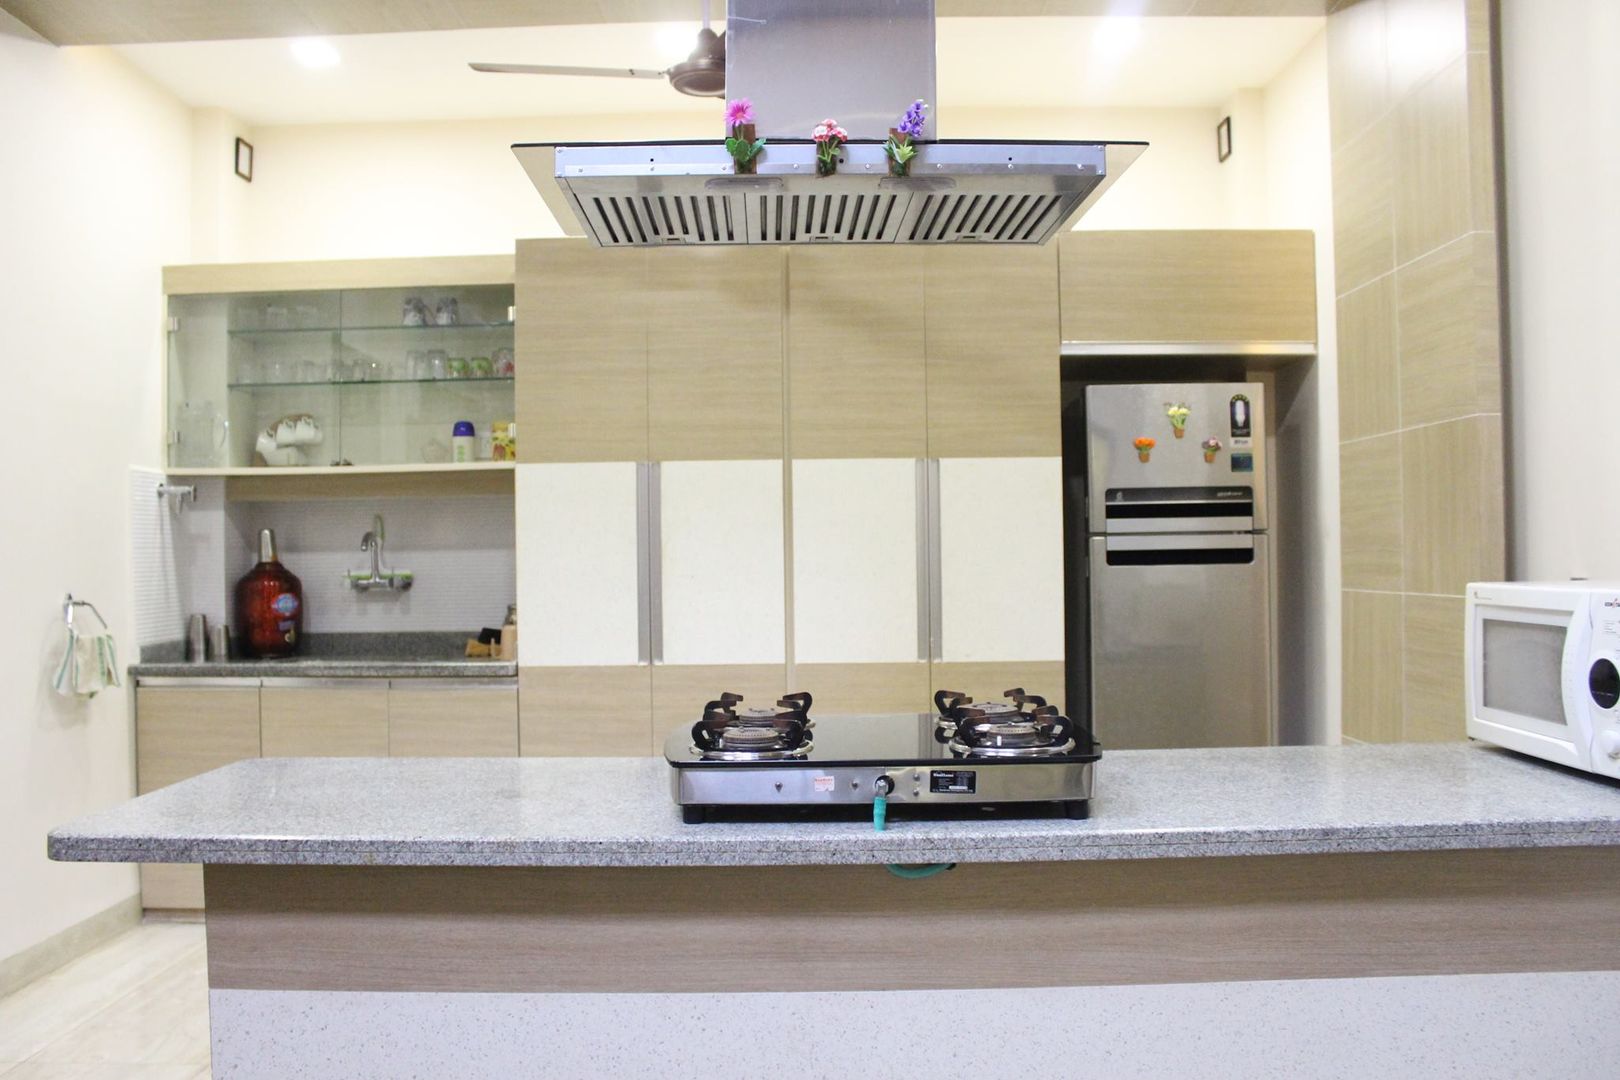 Duplex in Indore, Shadab Anwari & Associates. Shadab Anwari & Associates. Cocinas de estilo asiático